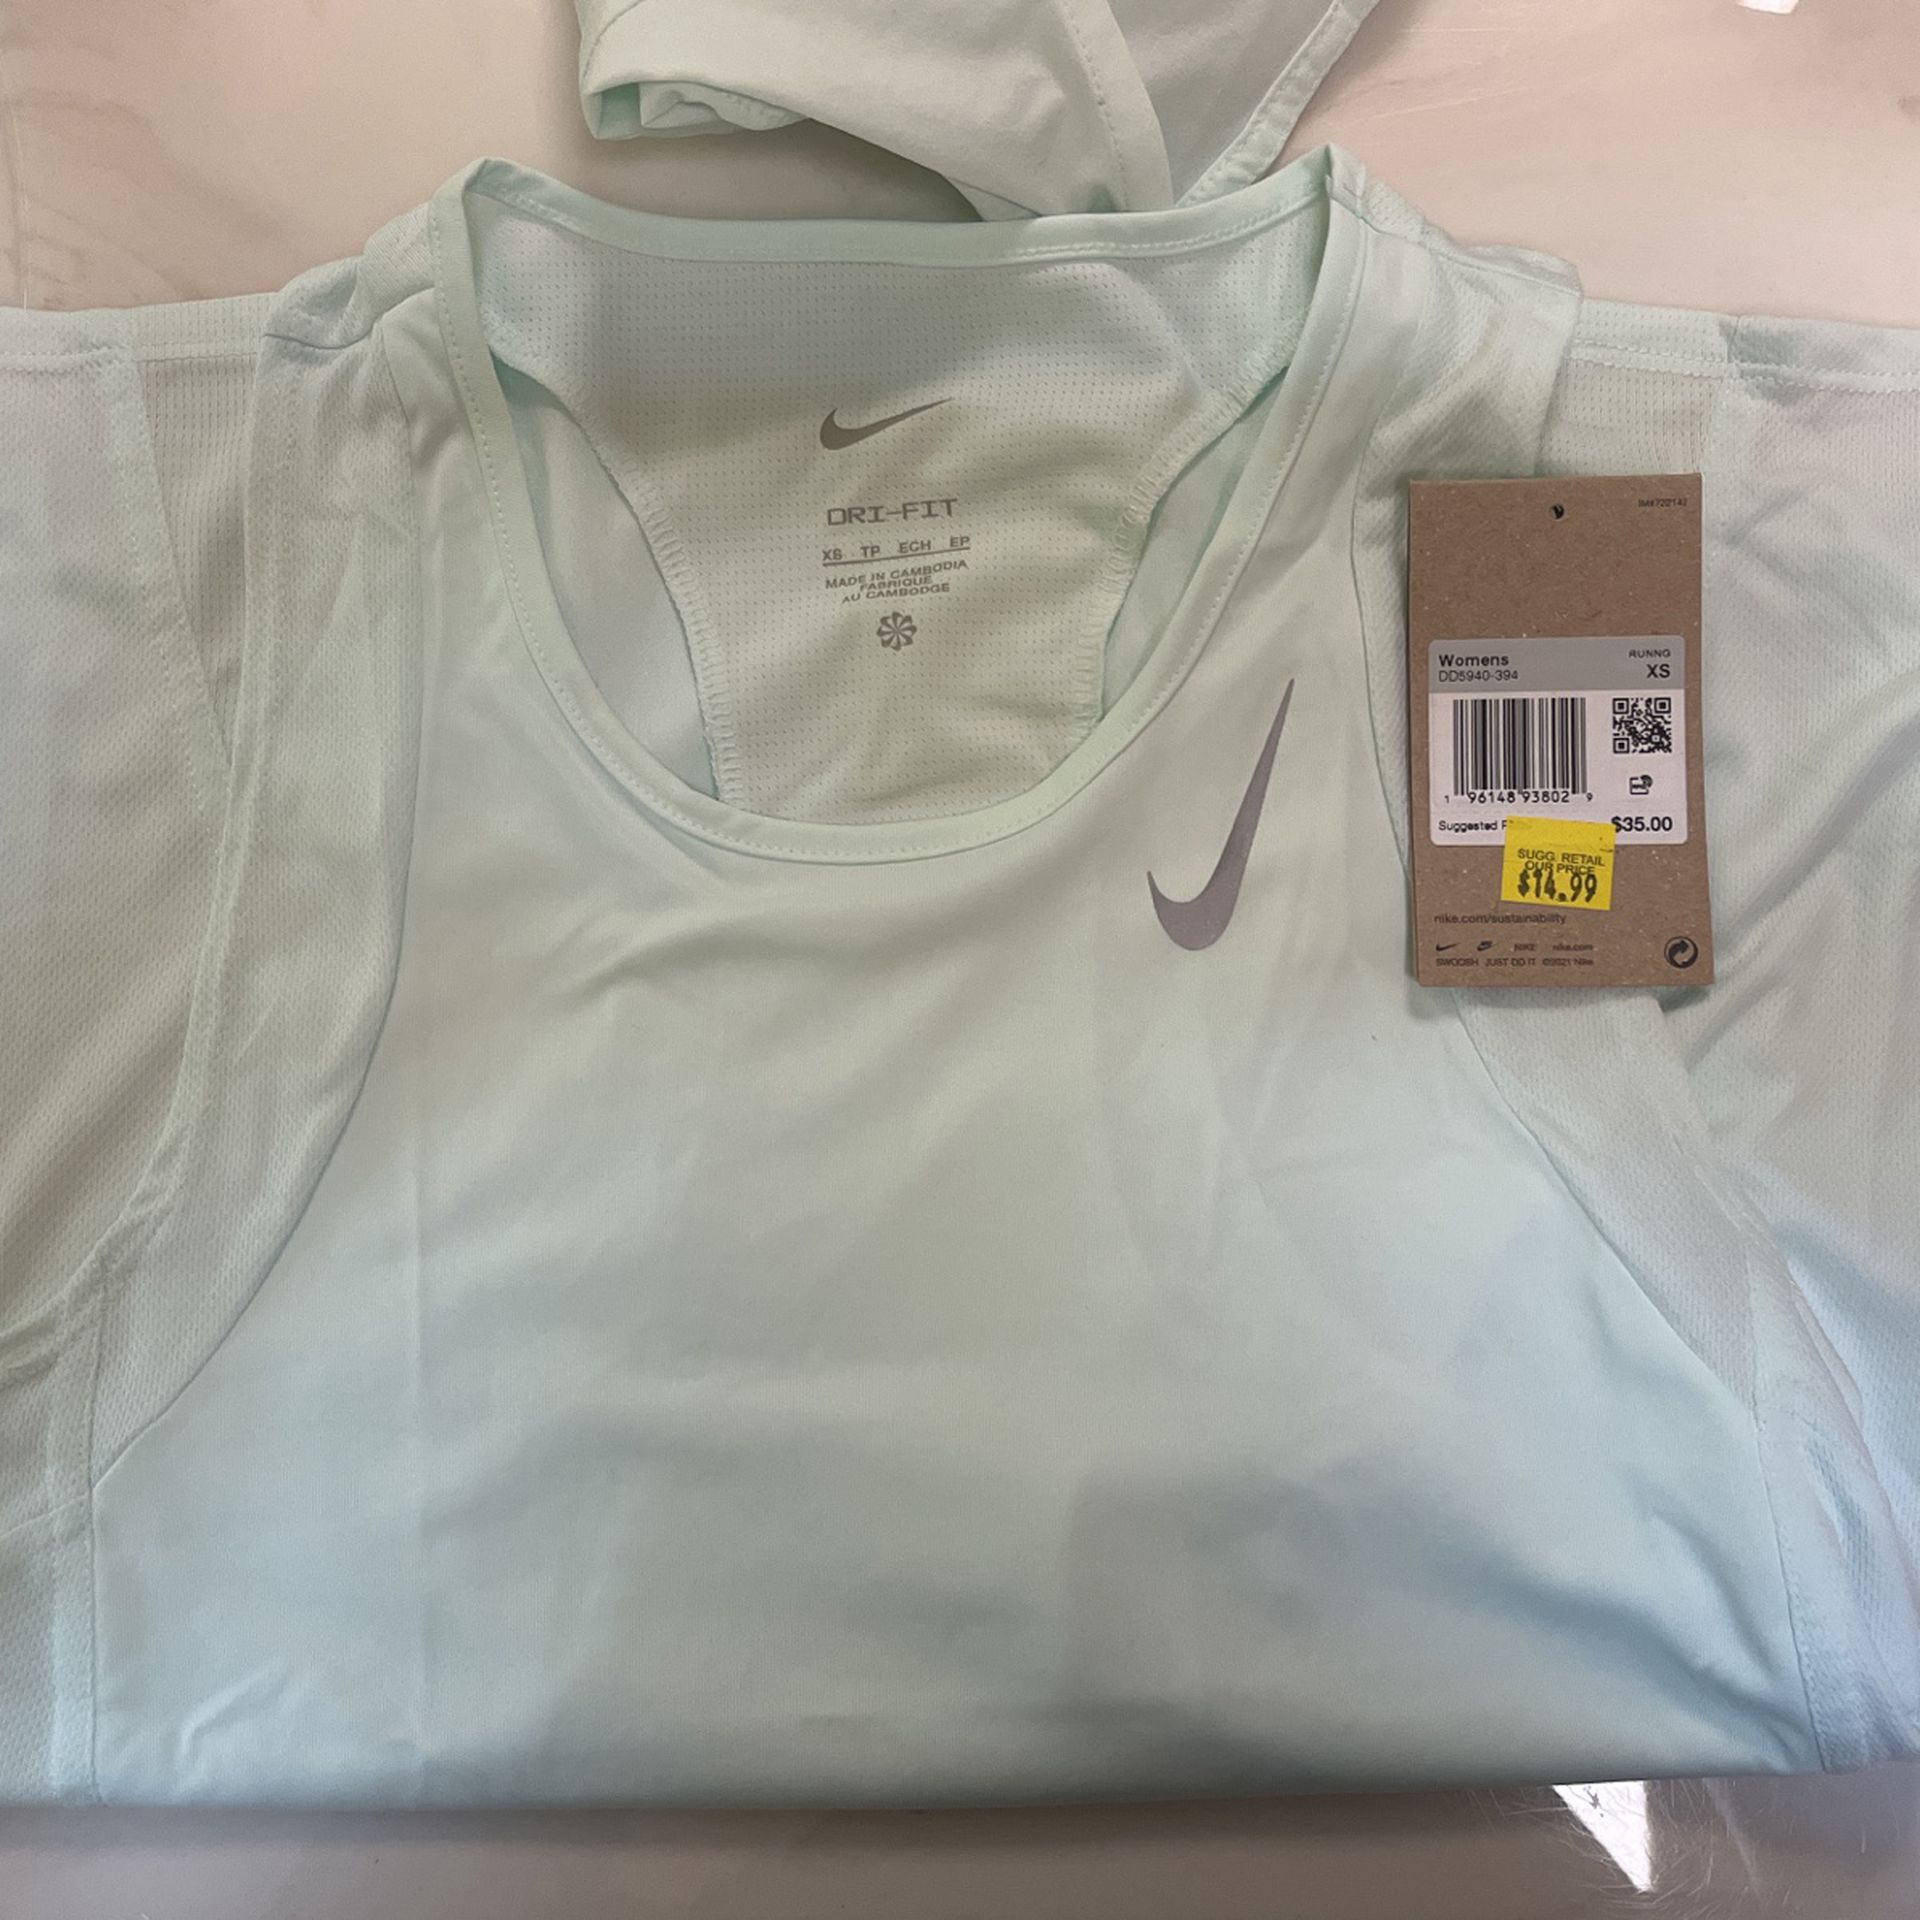 Nike Women’s Athletic Wear Lot for Sale in Tumwater, WA - OfferUp